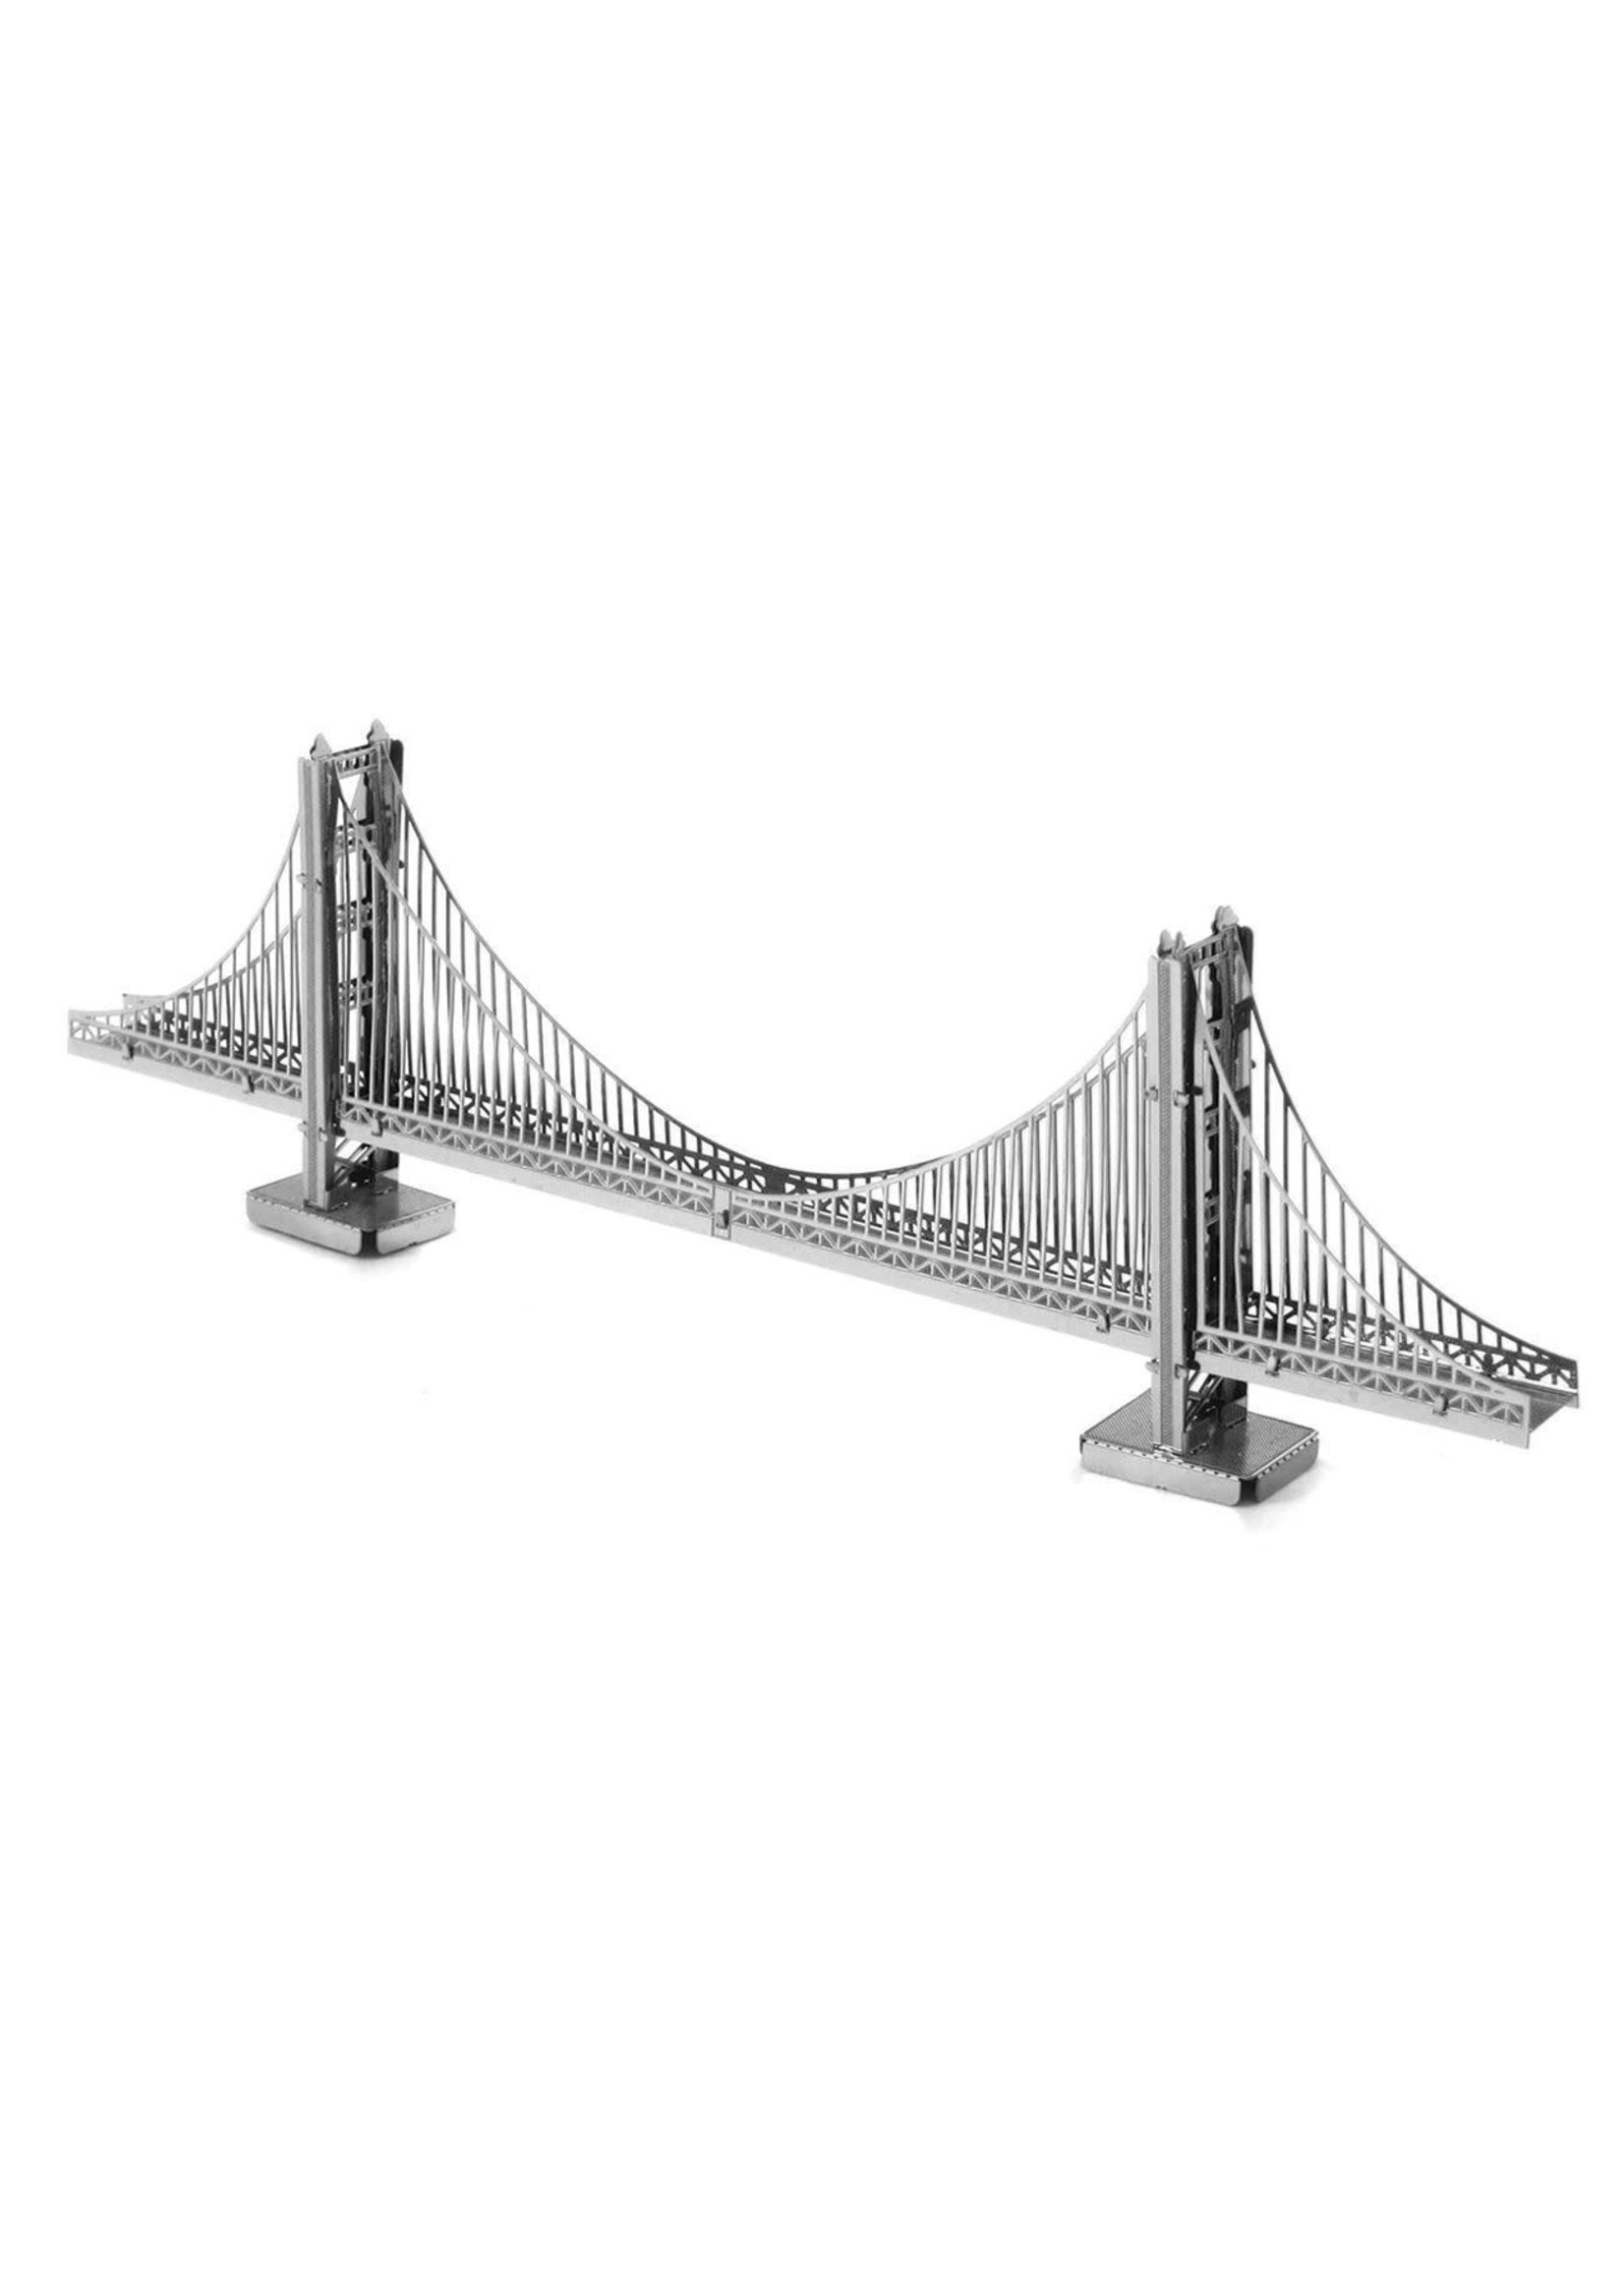 MetalWorks Golden Gate Bridge